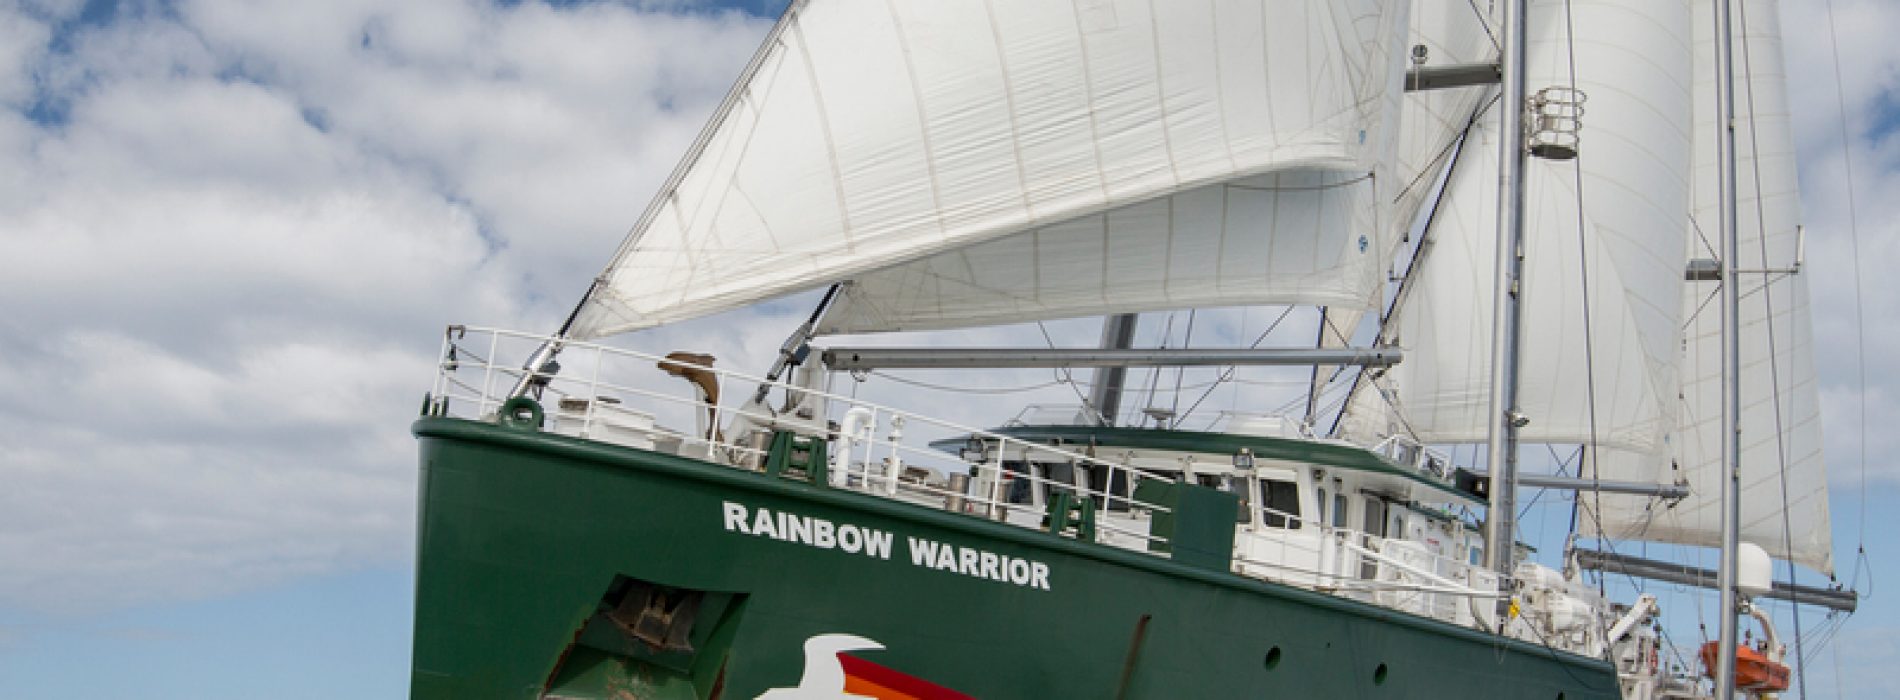 Nava-fanion a Greenpeace vine în România.  Rainbow Warrior dă alarma schimbărilor climatice